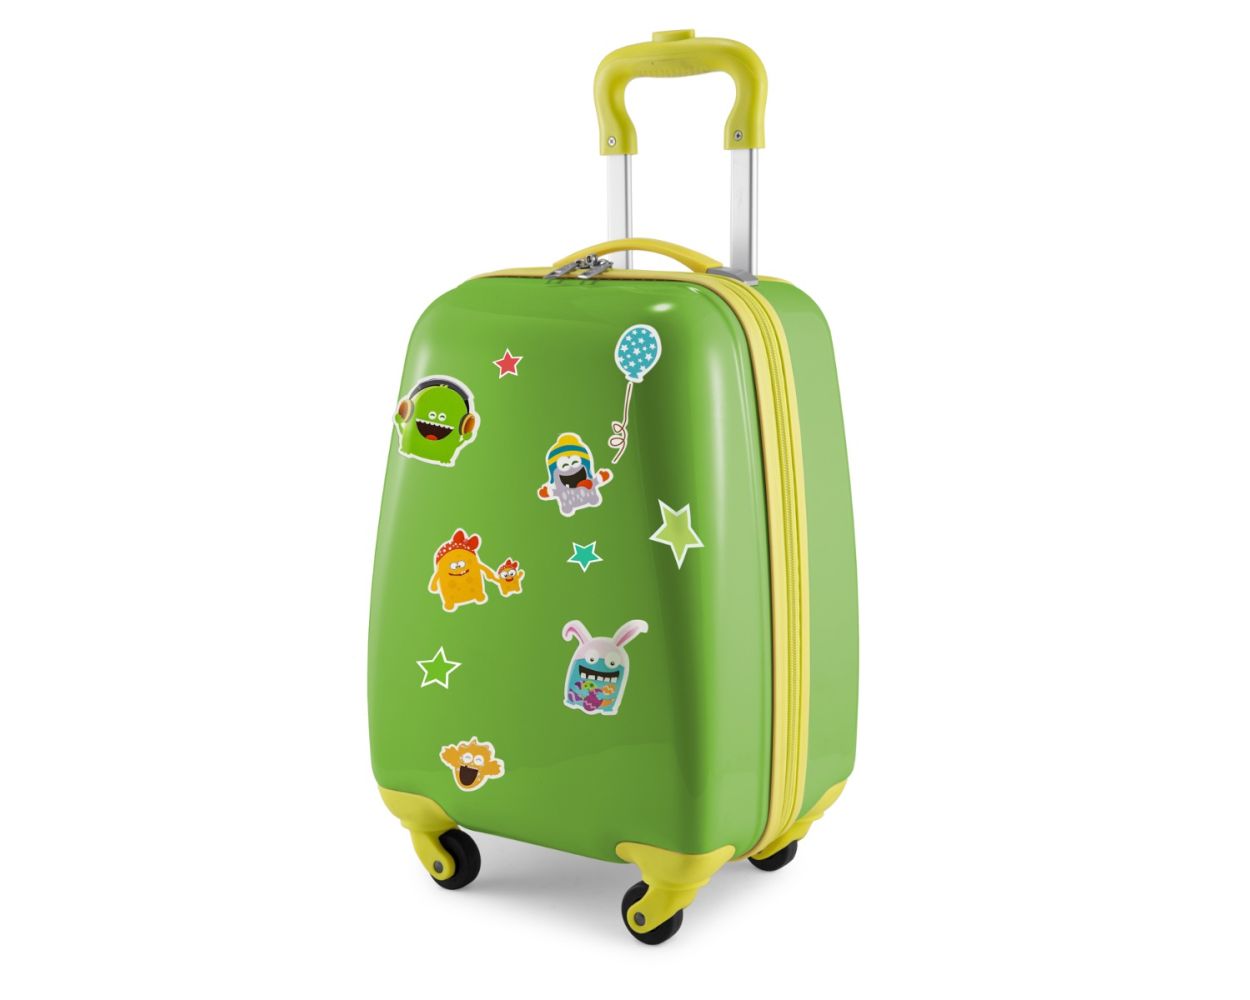 For Kids - Kindergepäck + reflektierende Aufkleber Monster, Kinderkoffer,  Hartschalenkoffer für Kinder, Handgepäck, 24 Liter, Apfelgrün